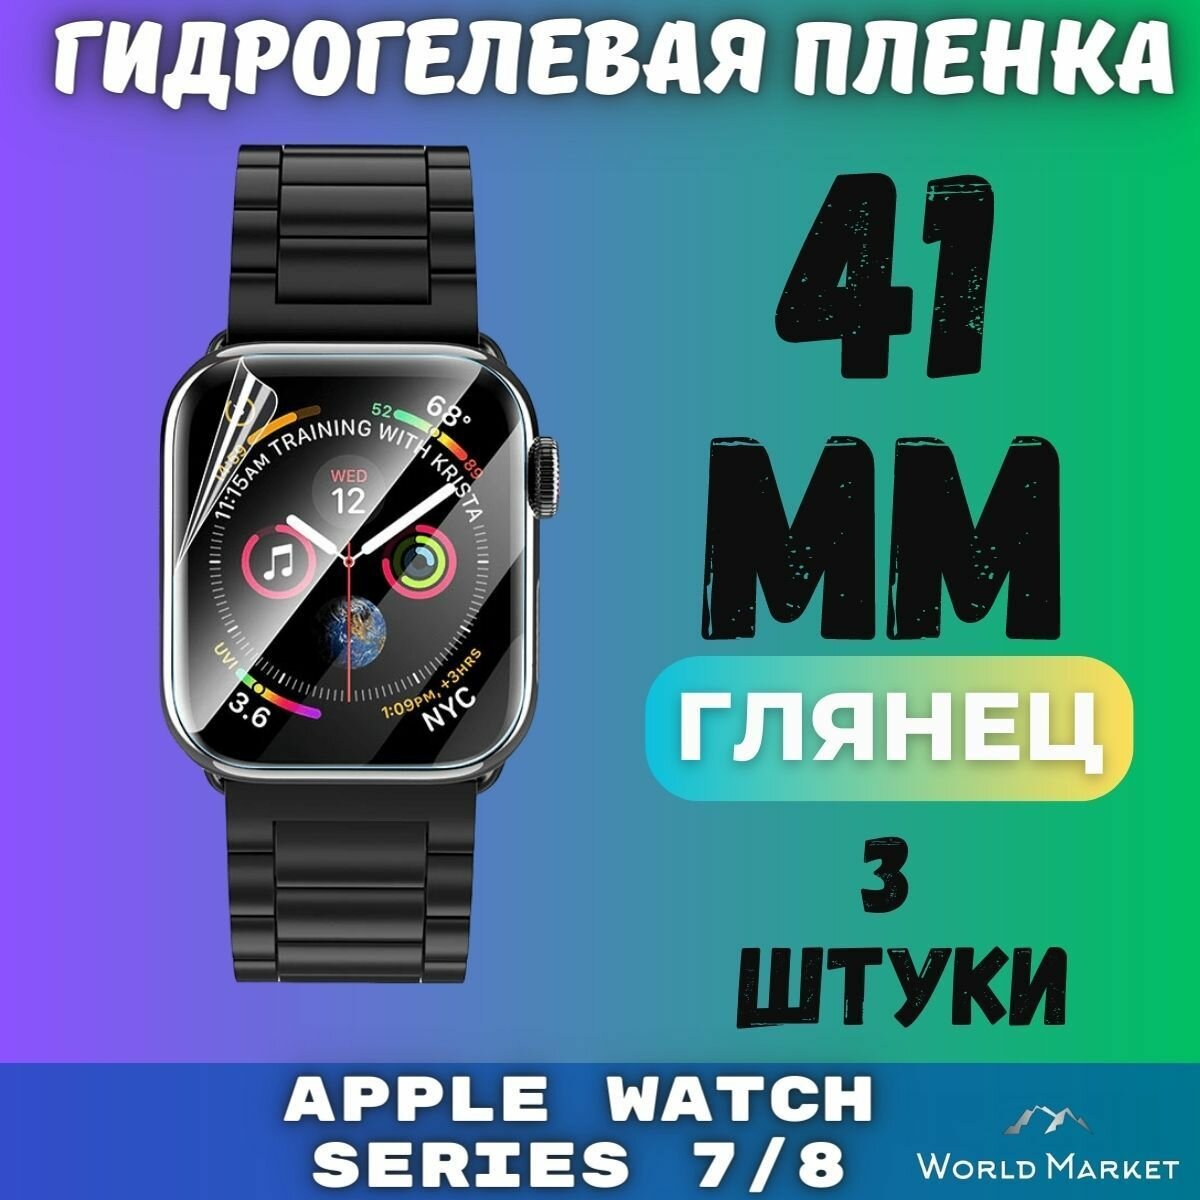 Защитная гидрогелевая пленка для умных часов Apple Watch Series 7/8/9 41mm (3 штуки) / глянцевая на экран / Самовосстанавливающаяся противоударная бронепленка для эпл вотч 789 (41мм)